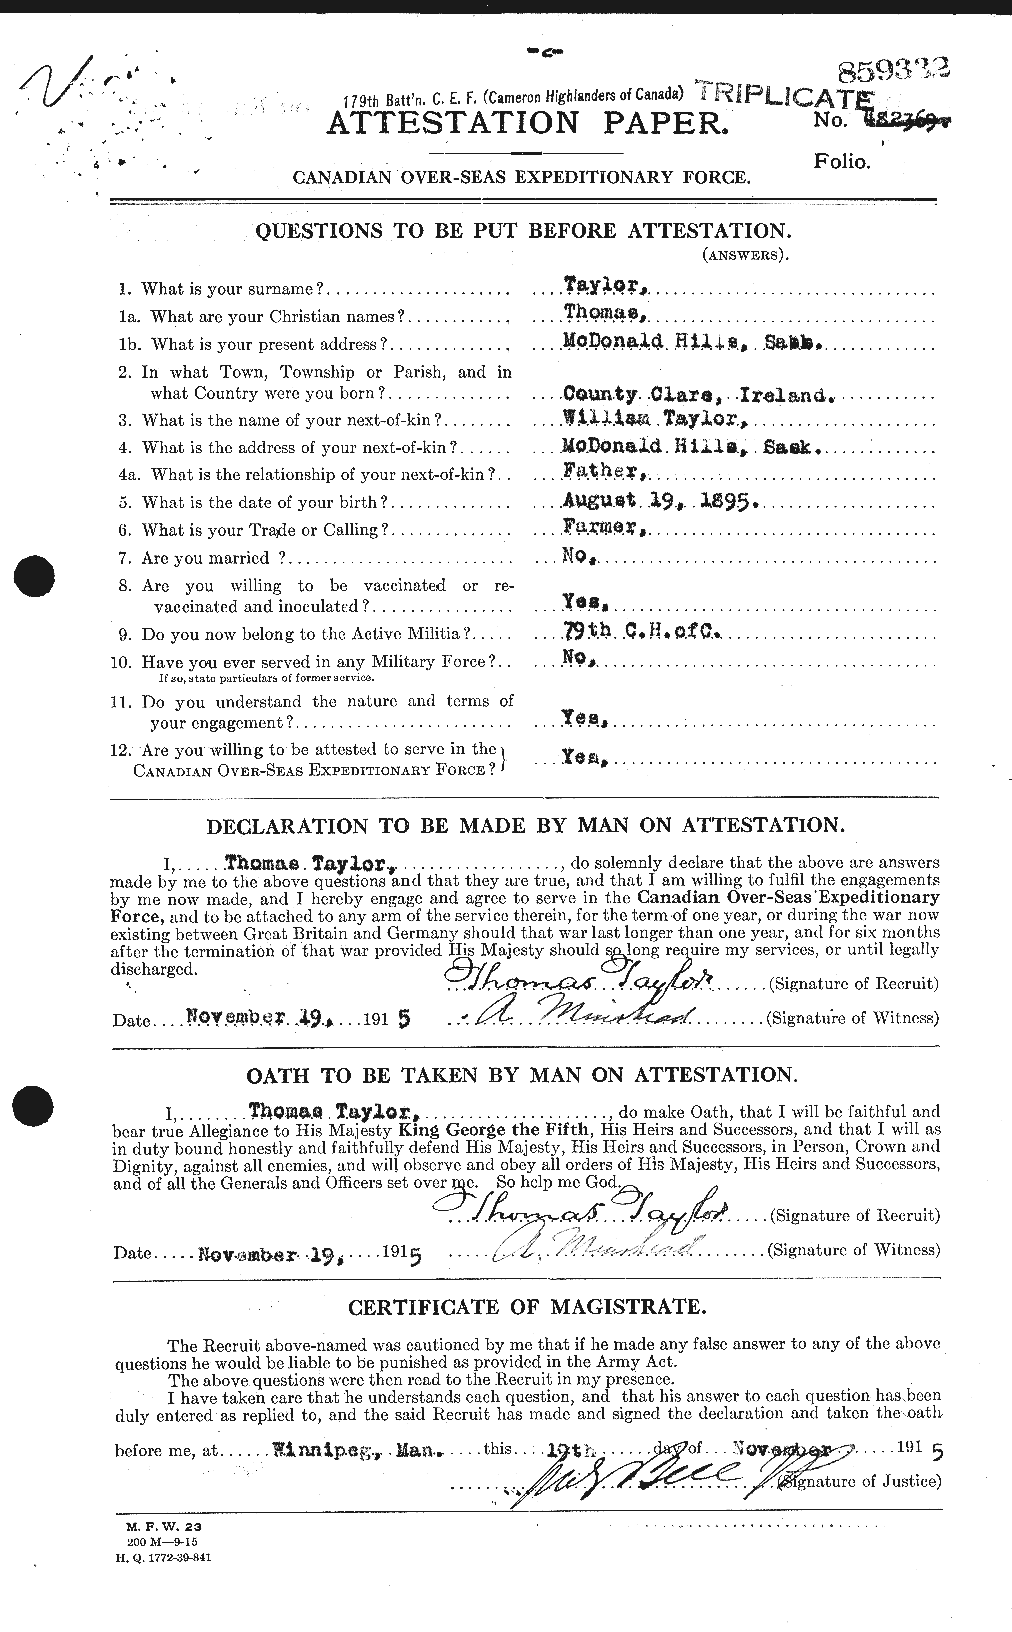 Dossiers du Personnel de la Première Guerre mondiale - CEC 627954a